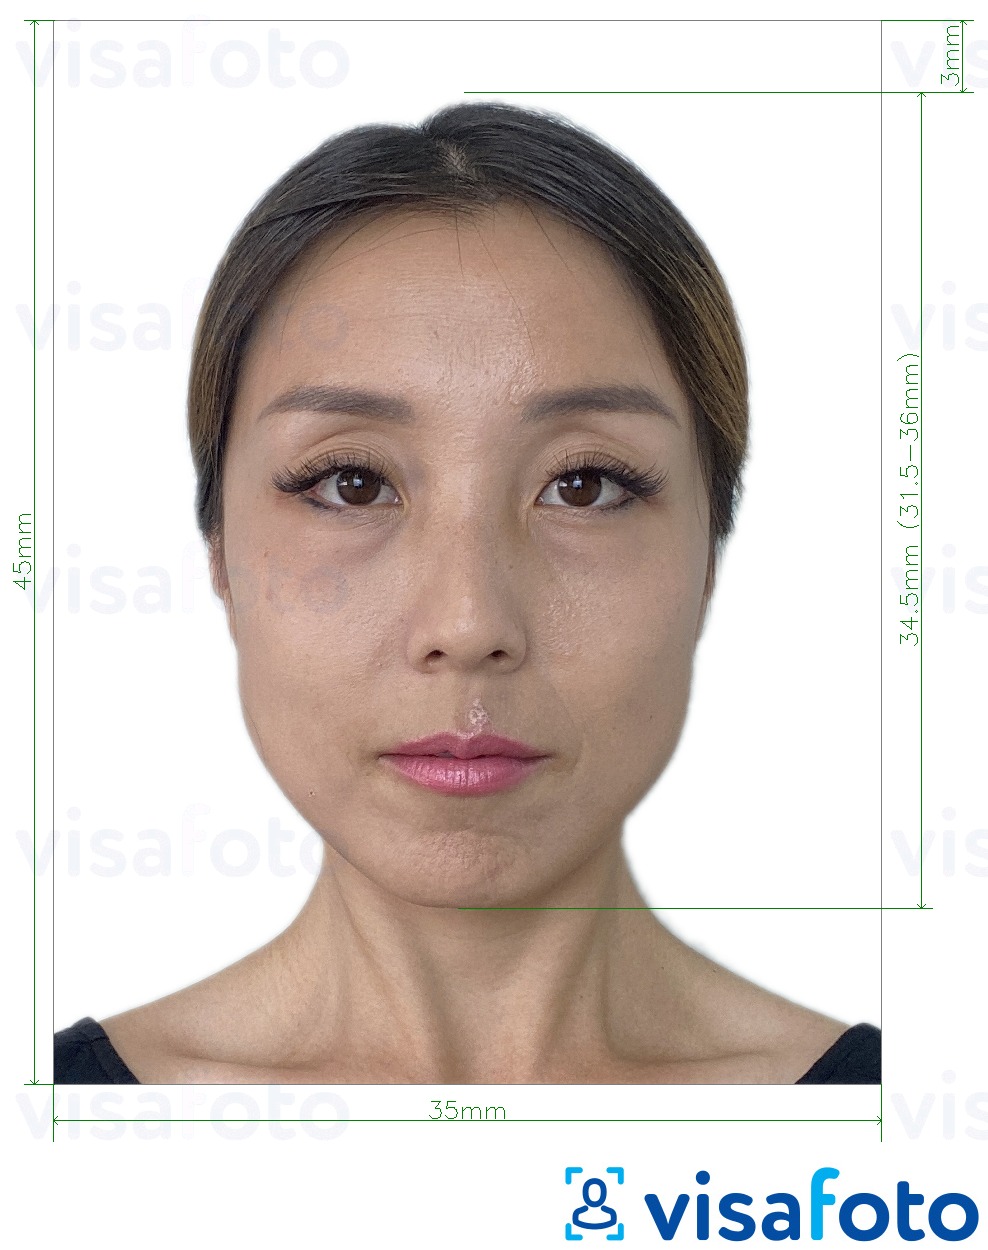 Ejemplo de foto para Taiwan Visa 35x45 mm (3.5x4.5 cm) con la especificación del tamaño exacto